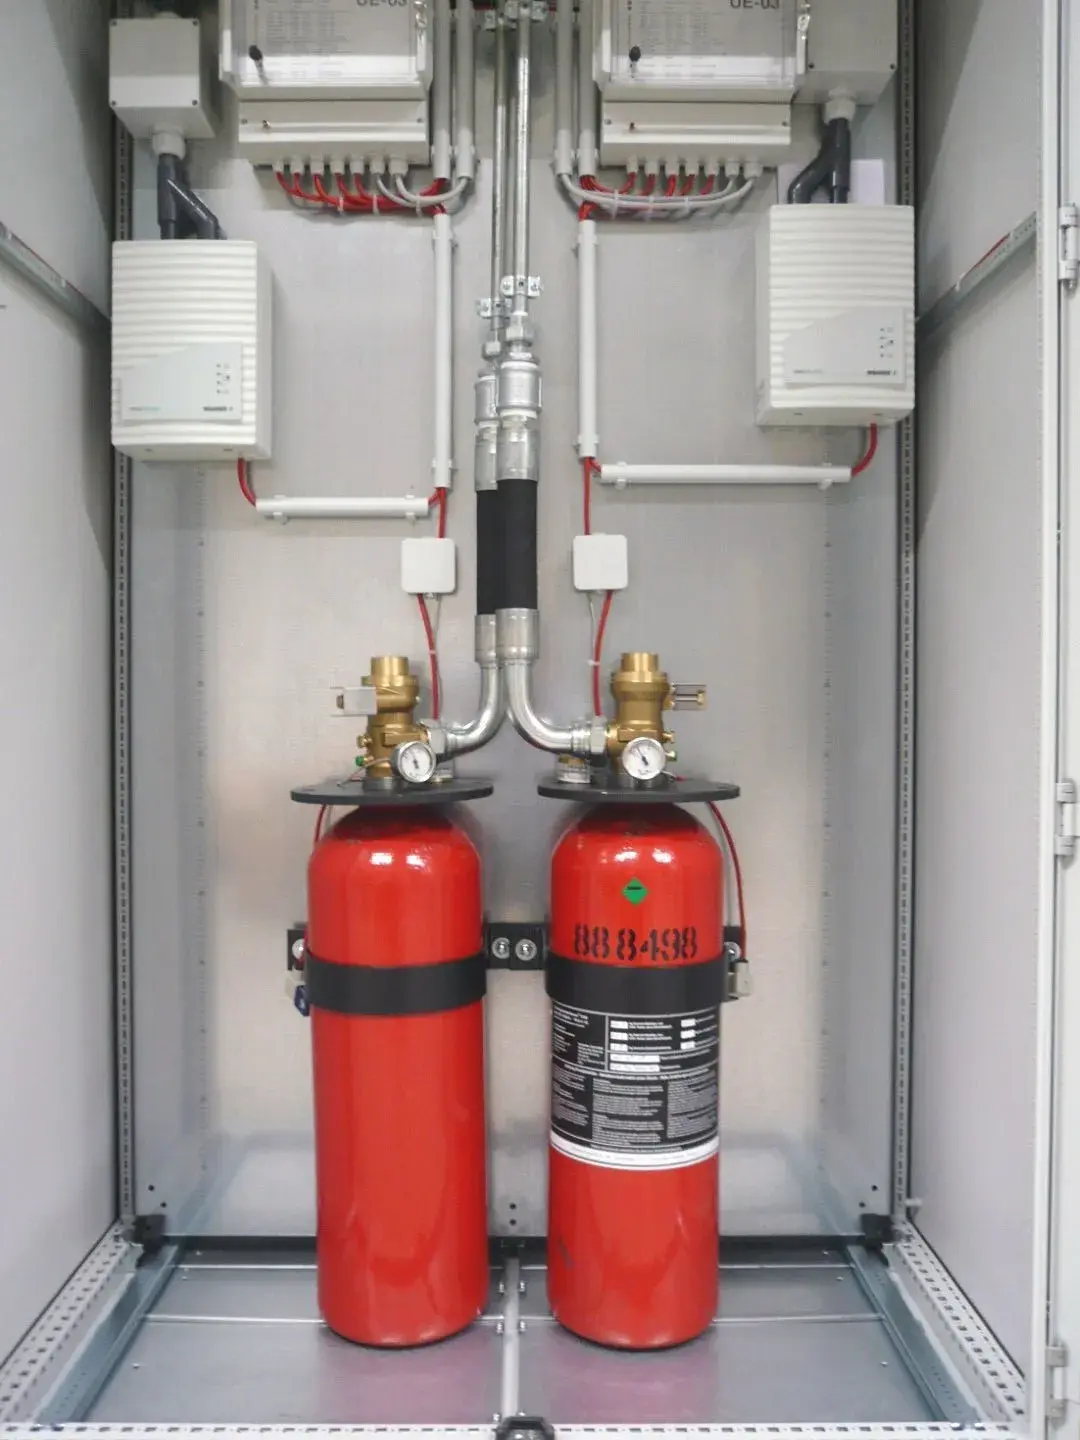 Gas-Löschanlage Wartung - CWS Fire Safety